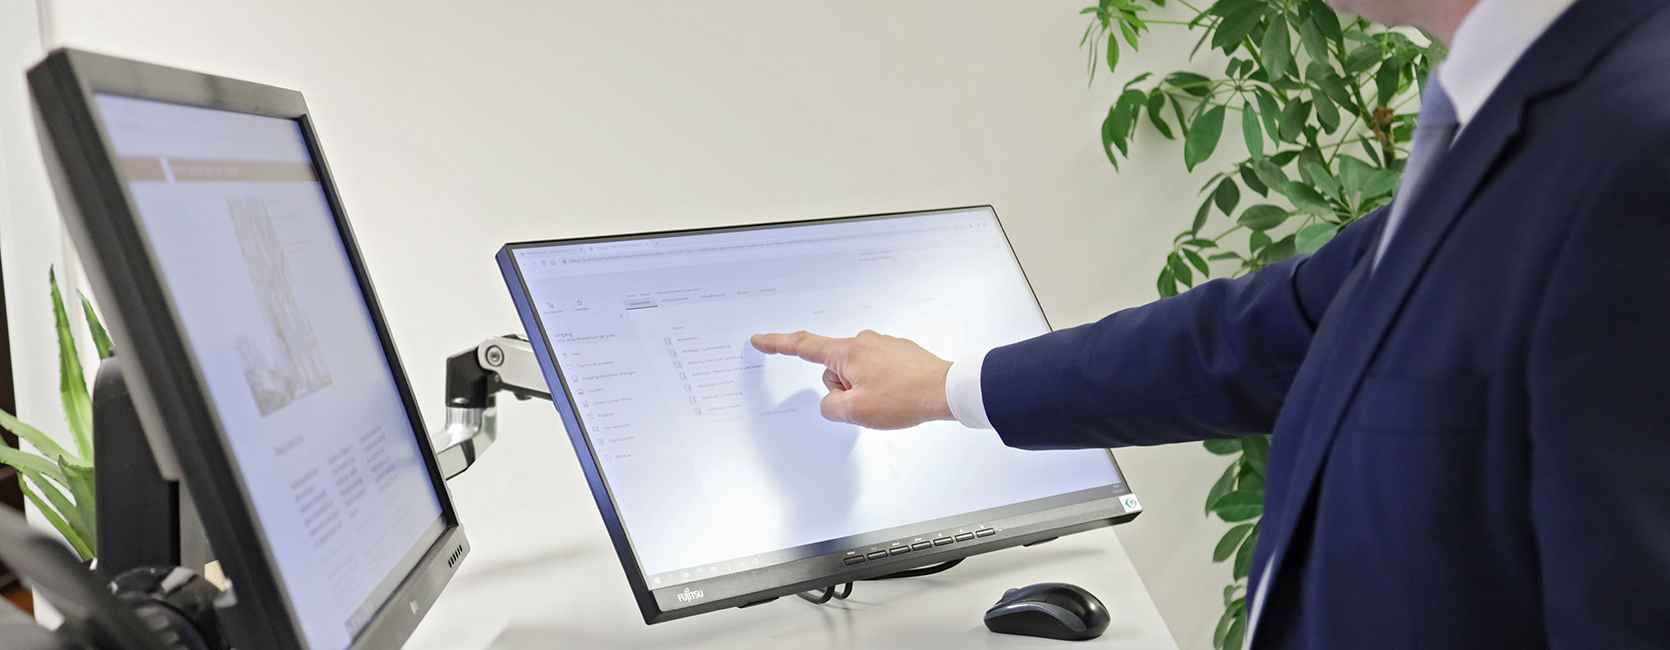 Eine männliche Person stehend vor einem Schreibtisch mit zwei Monitoren, einem Telefon und einer Tastatur. Männliche Person bedient einen Touch-Bildschirm